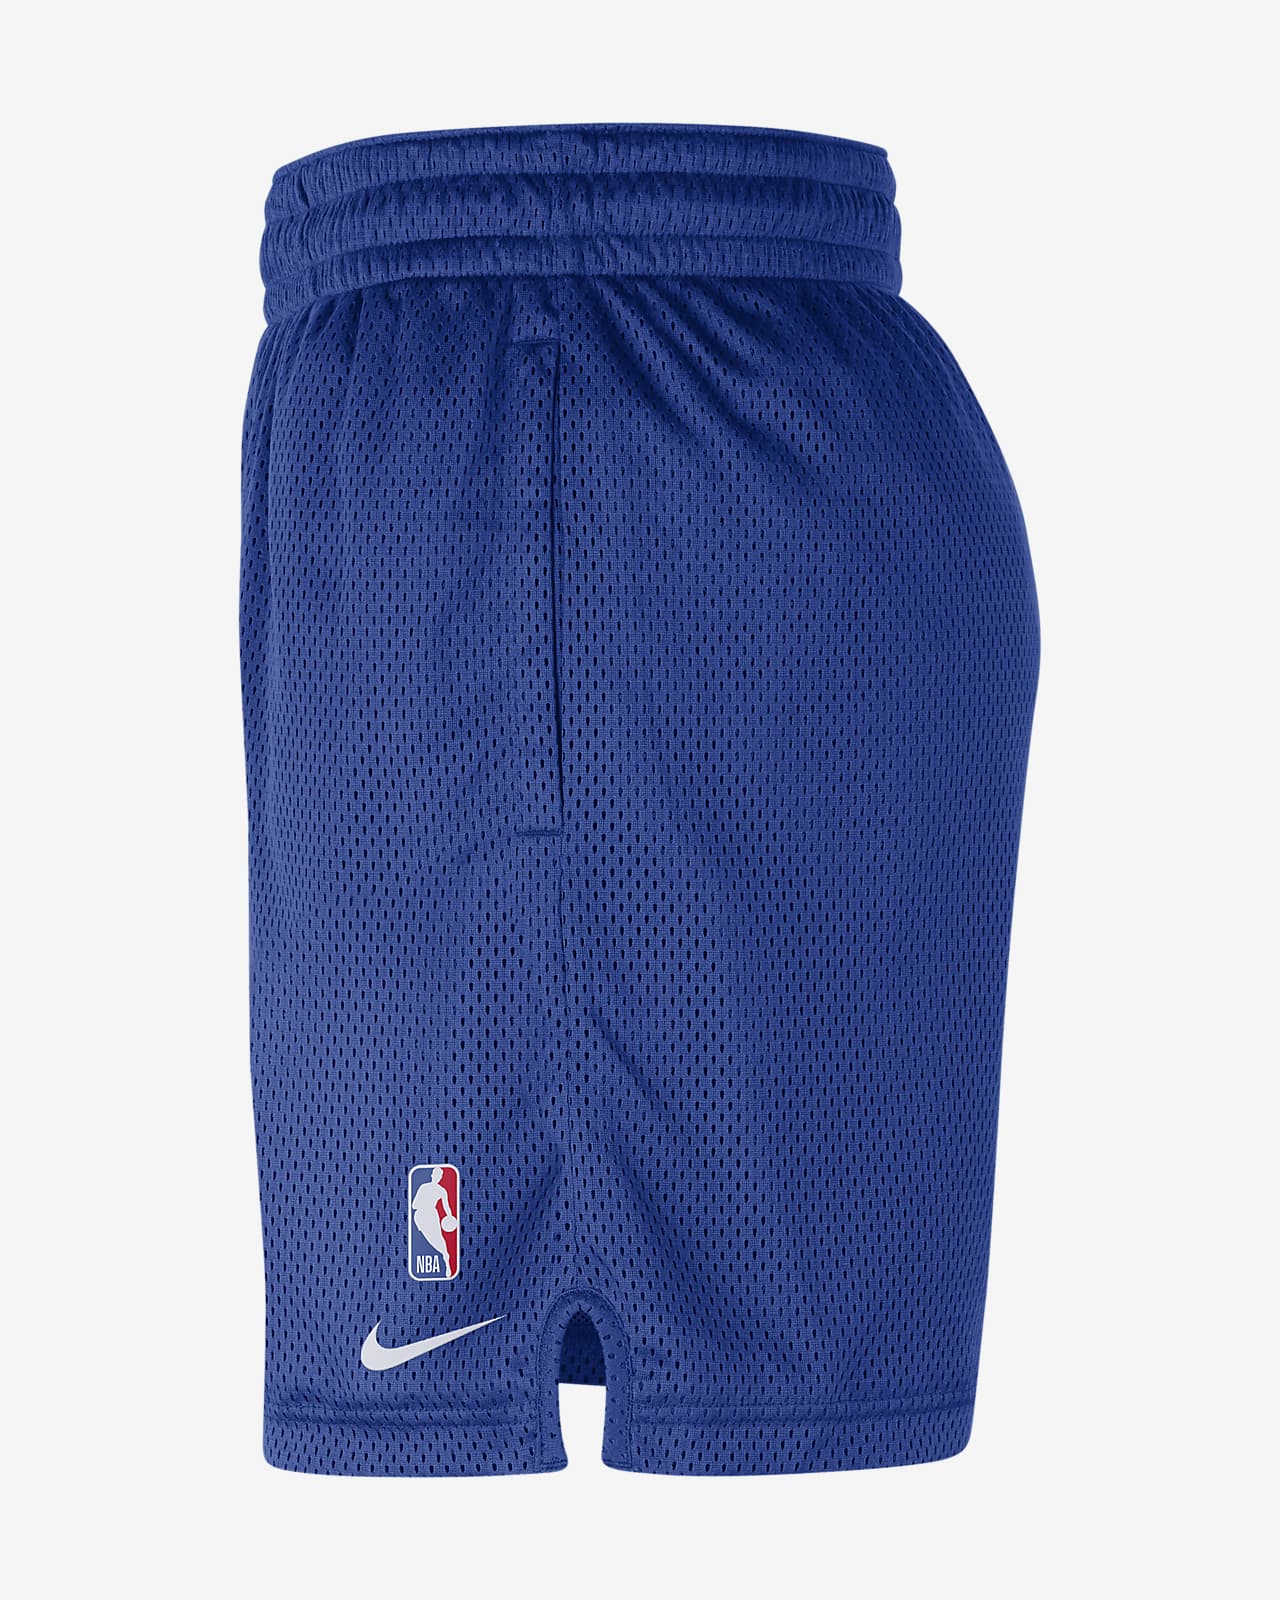 En team Goed opgeleid Frank Worthley LA Clippers Men's Nike NBA Shorts. Nike.com